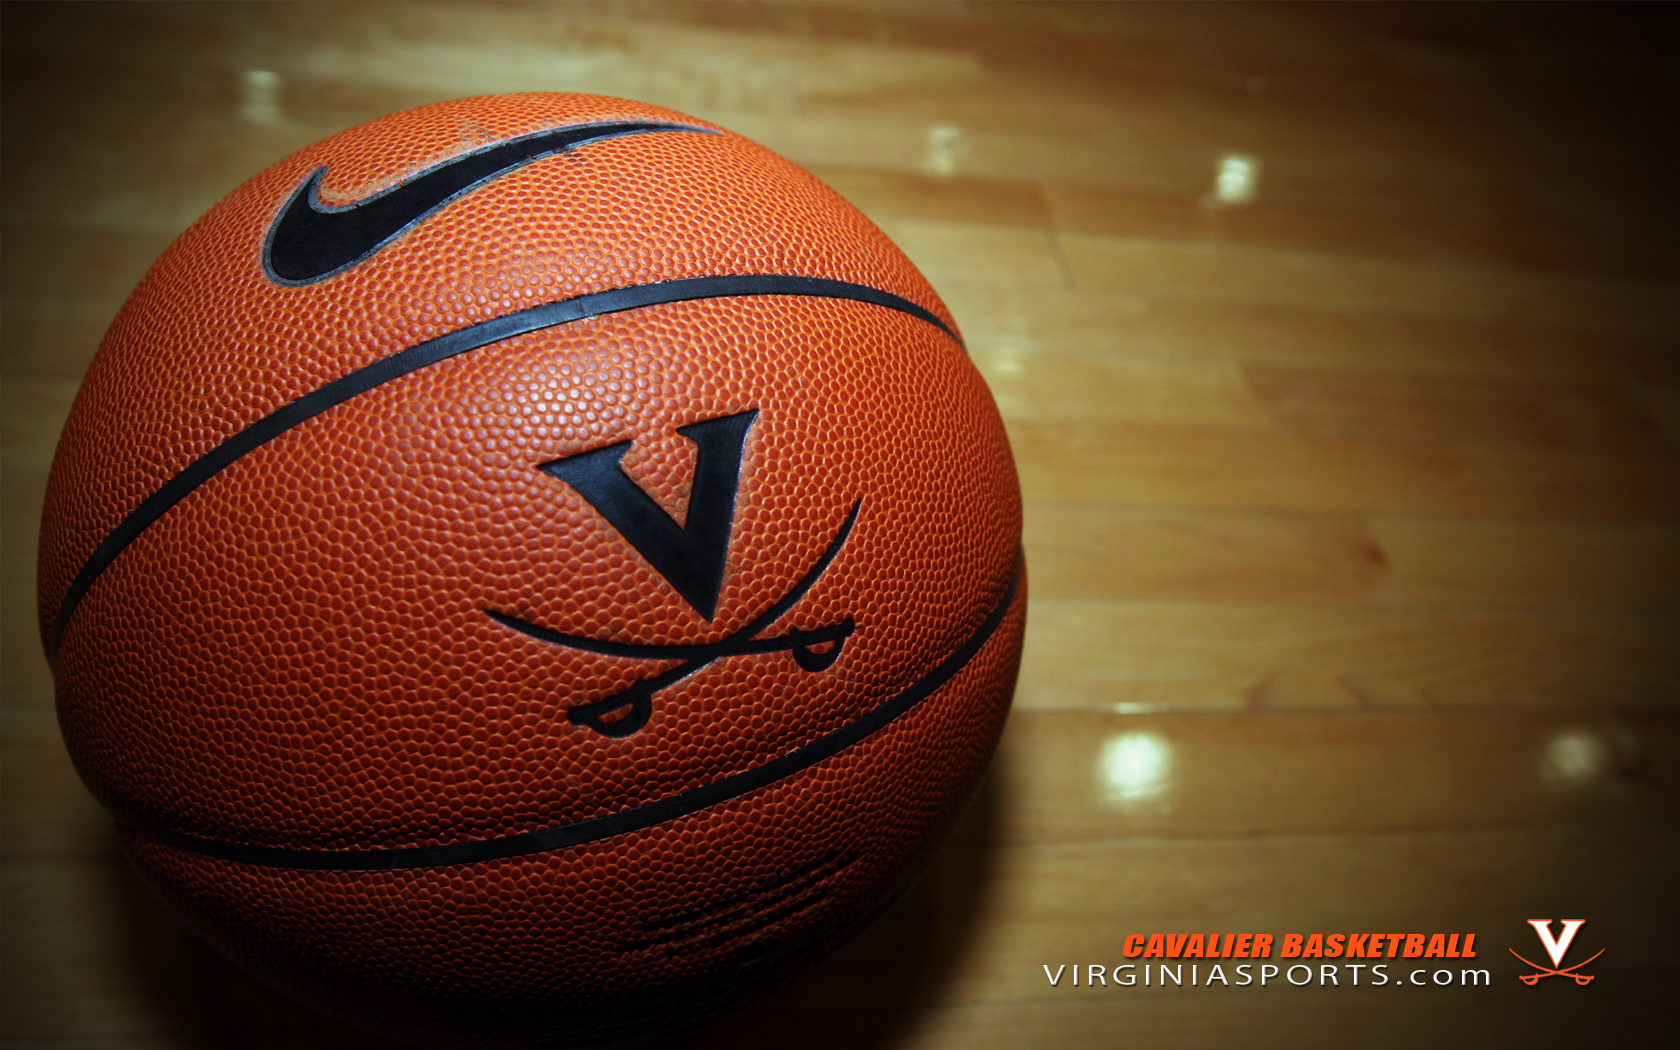 Men S Basketball Wallpaper University Of Virginia Athletics